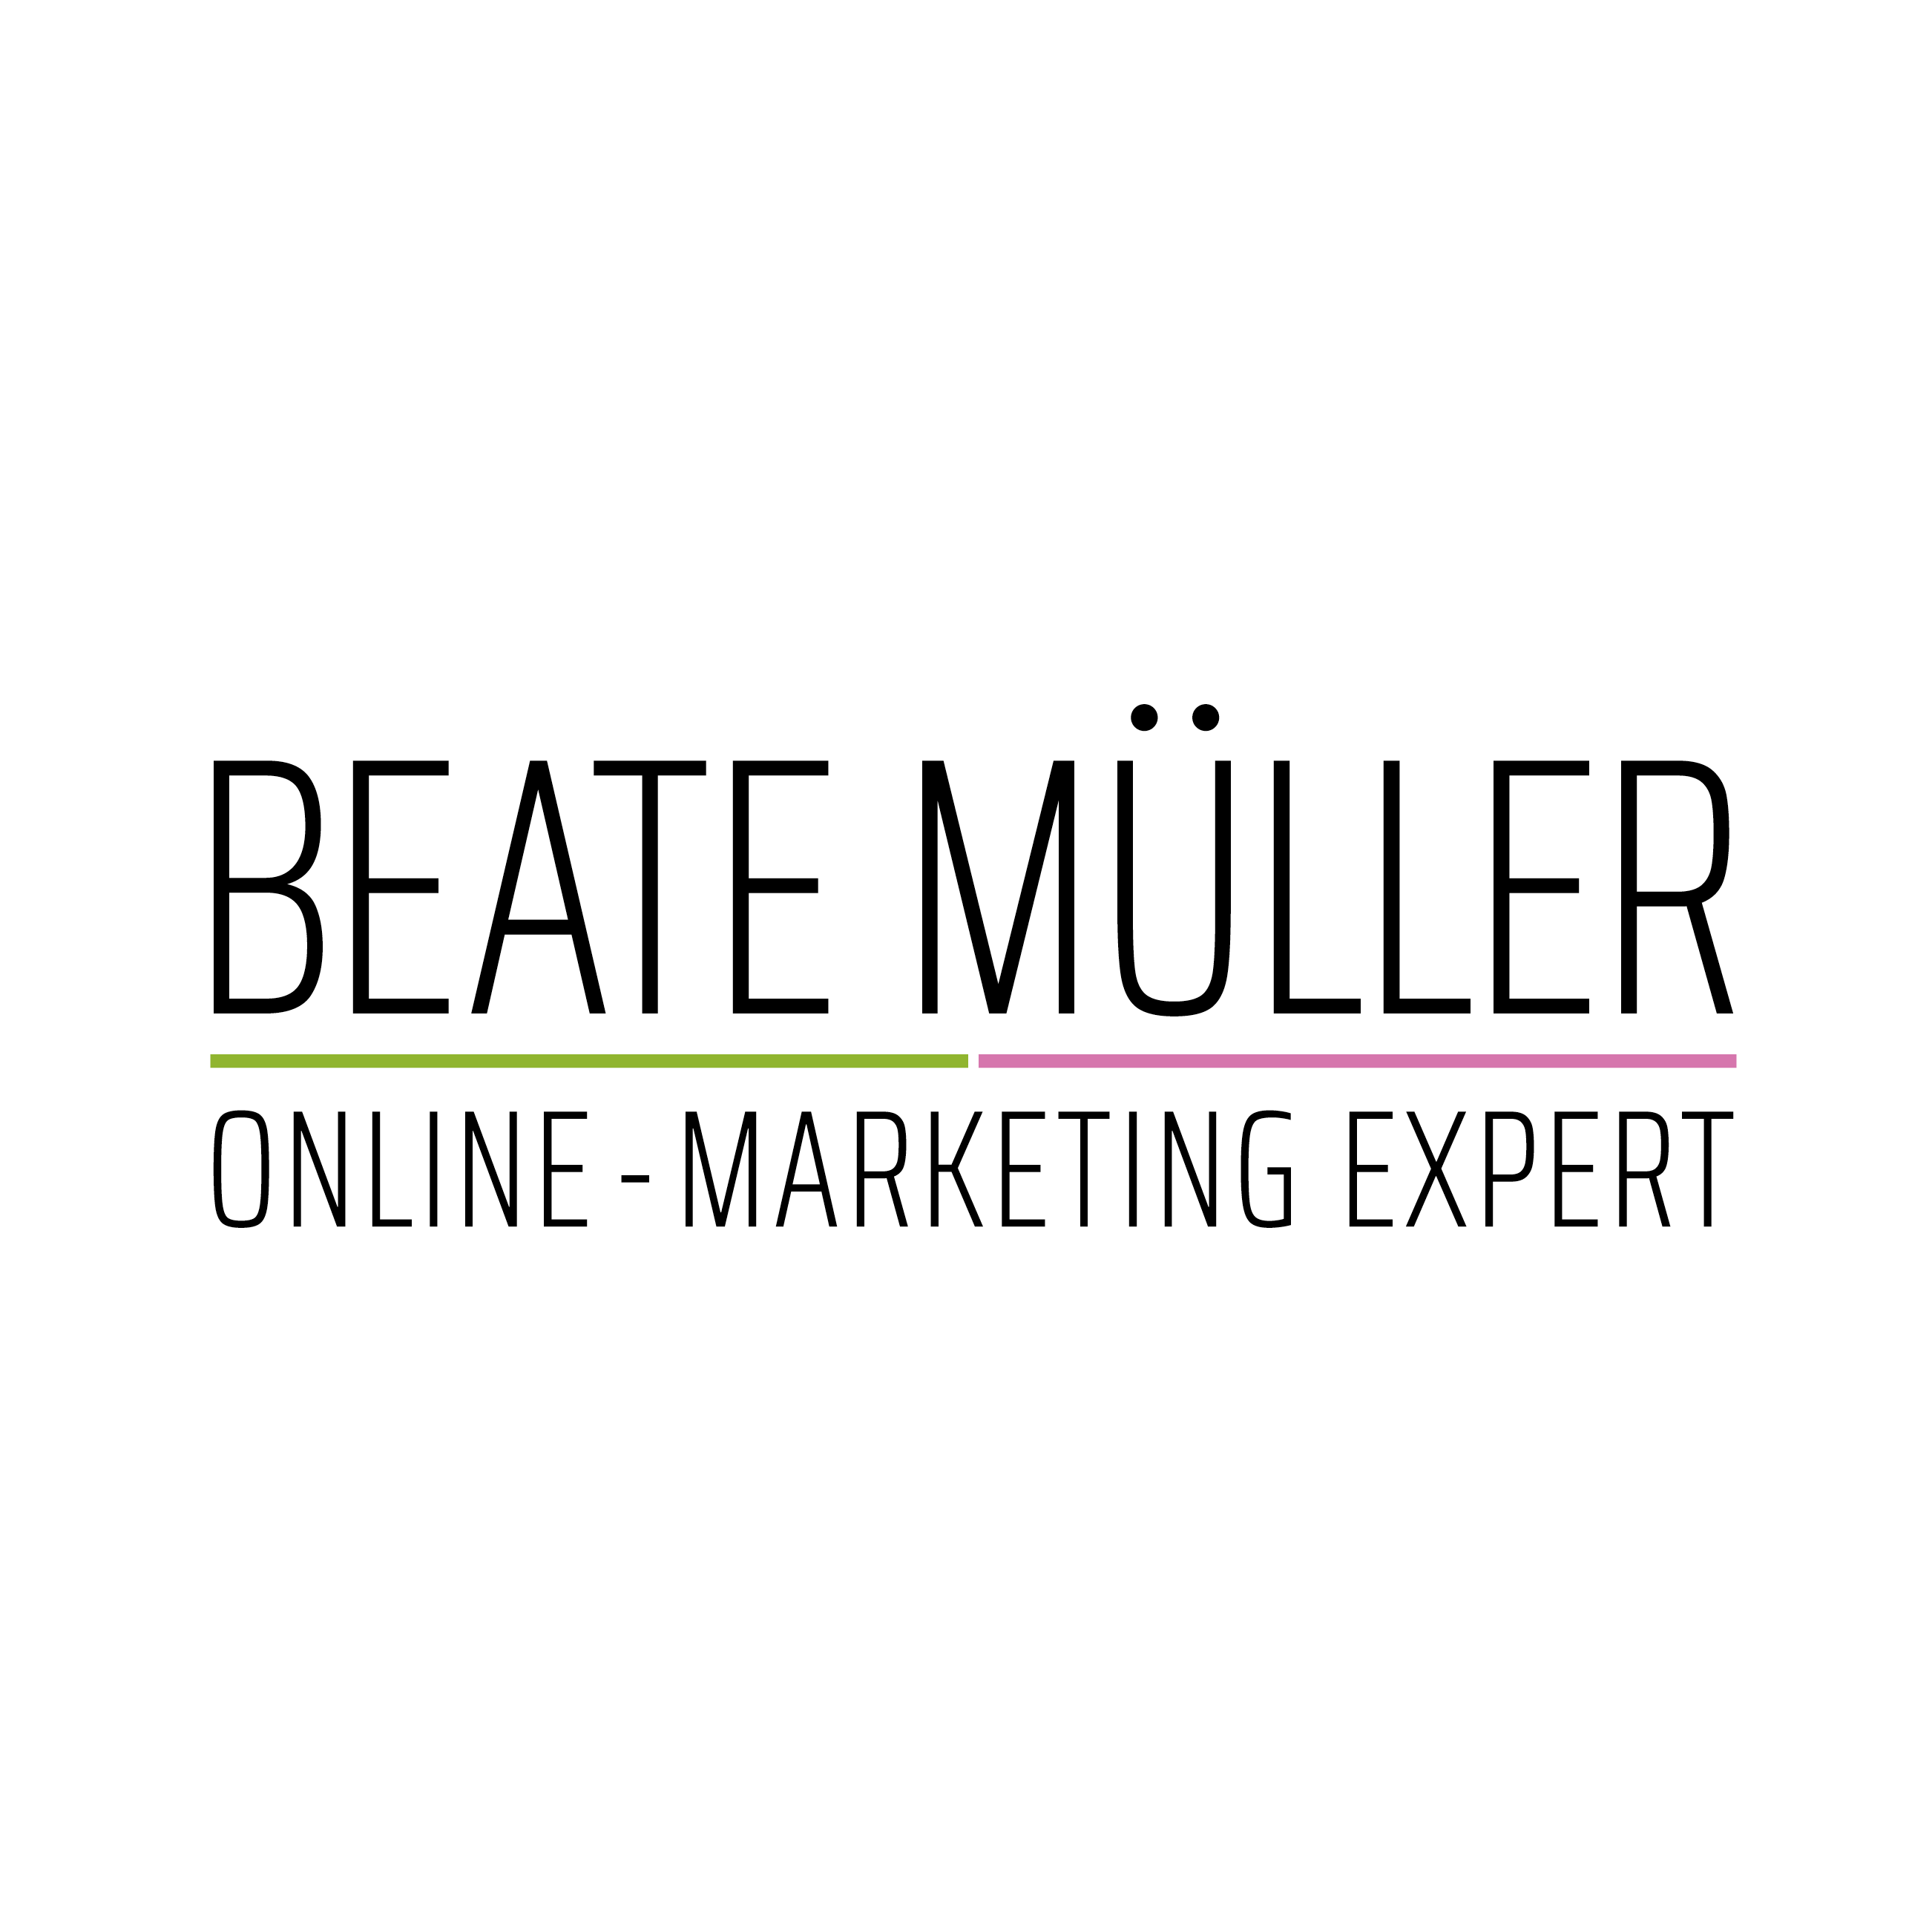 Beate Müller - Online-Marketing Expert